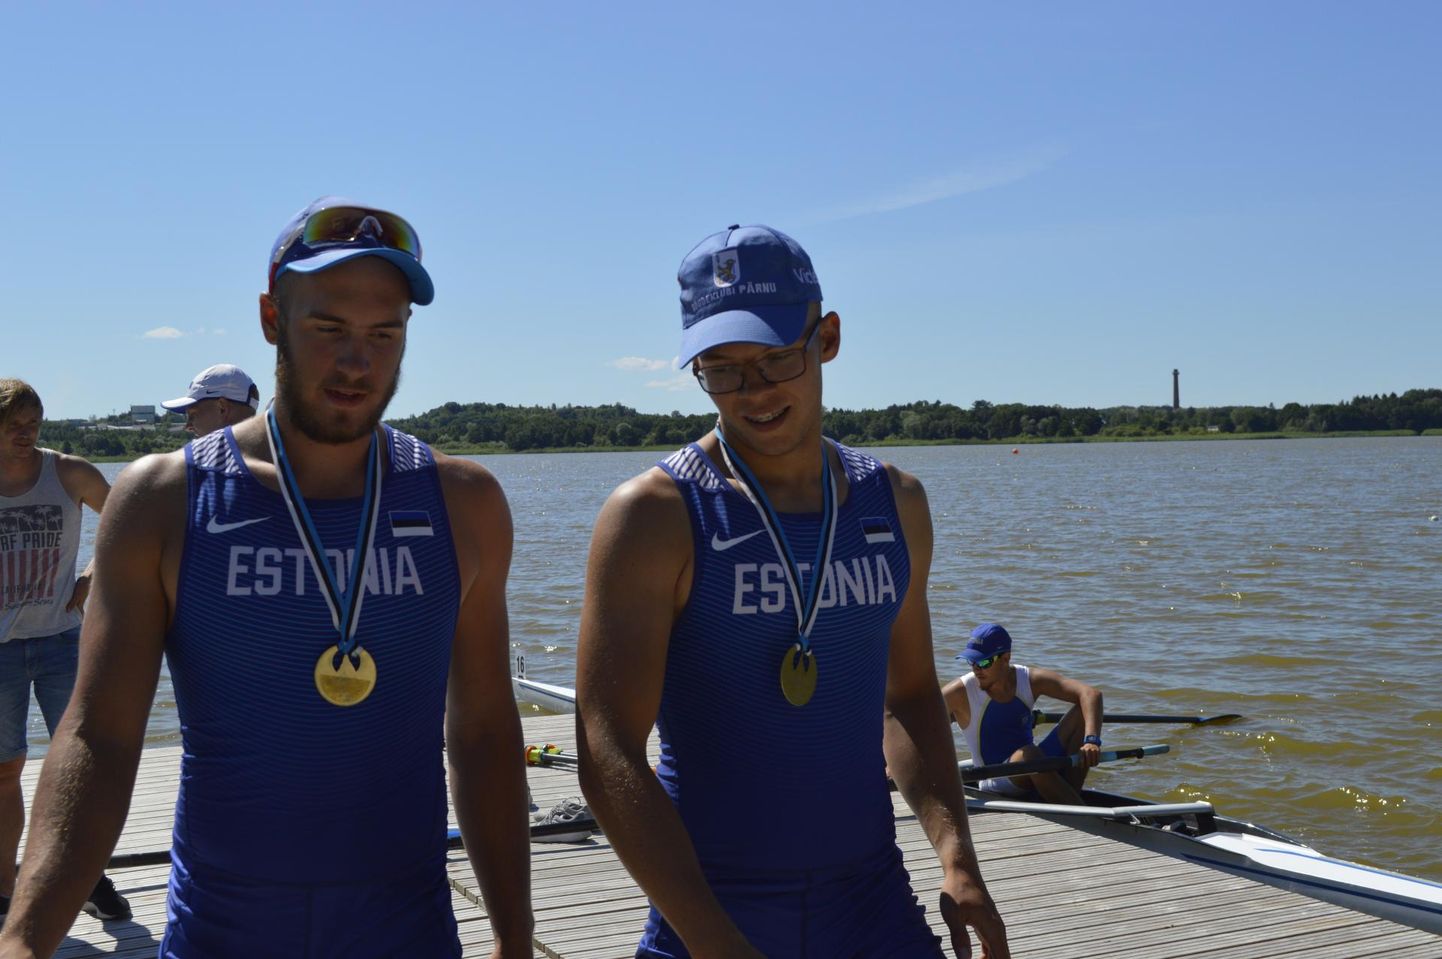 Mõlemal päeval võitsid noormeeste roolijata kahepaadil kuldmedali Pärnu sõudeklubi atleedid Rasmus Jõesaar (vasakul) ja Raiko Taave Tammjärv.